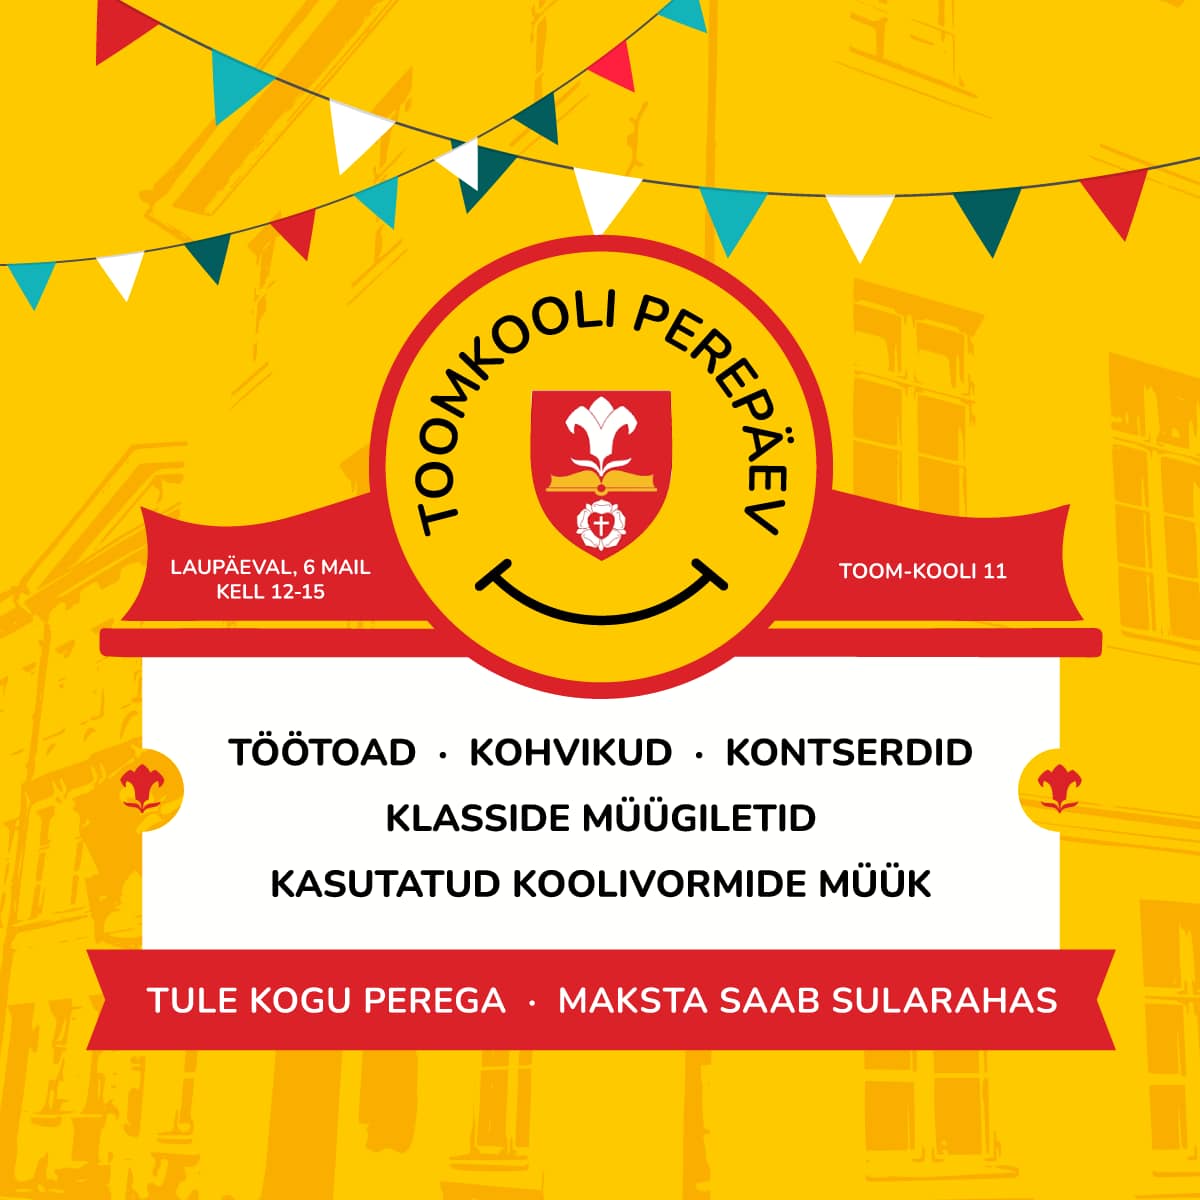 Juba homme! Tallinna Toomkool kutsub perepäevale